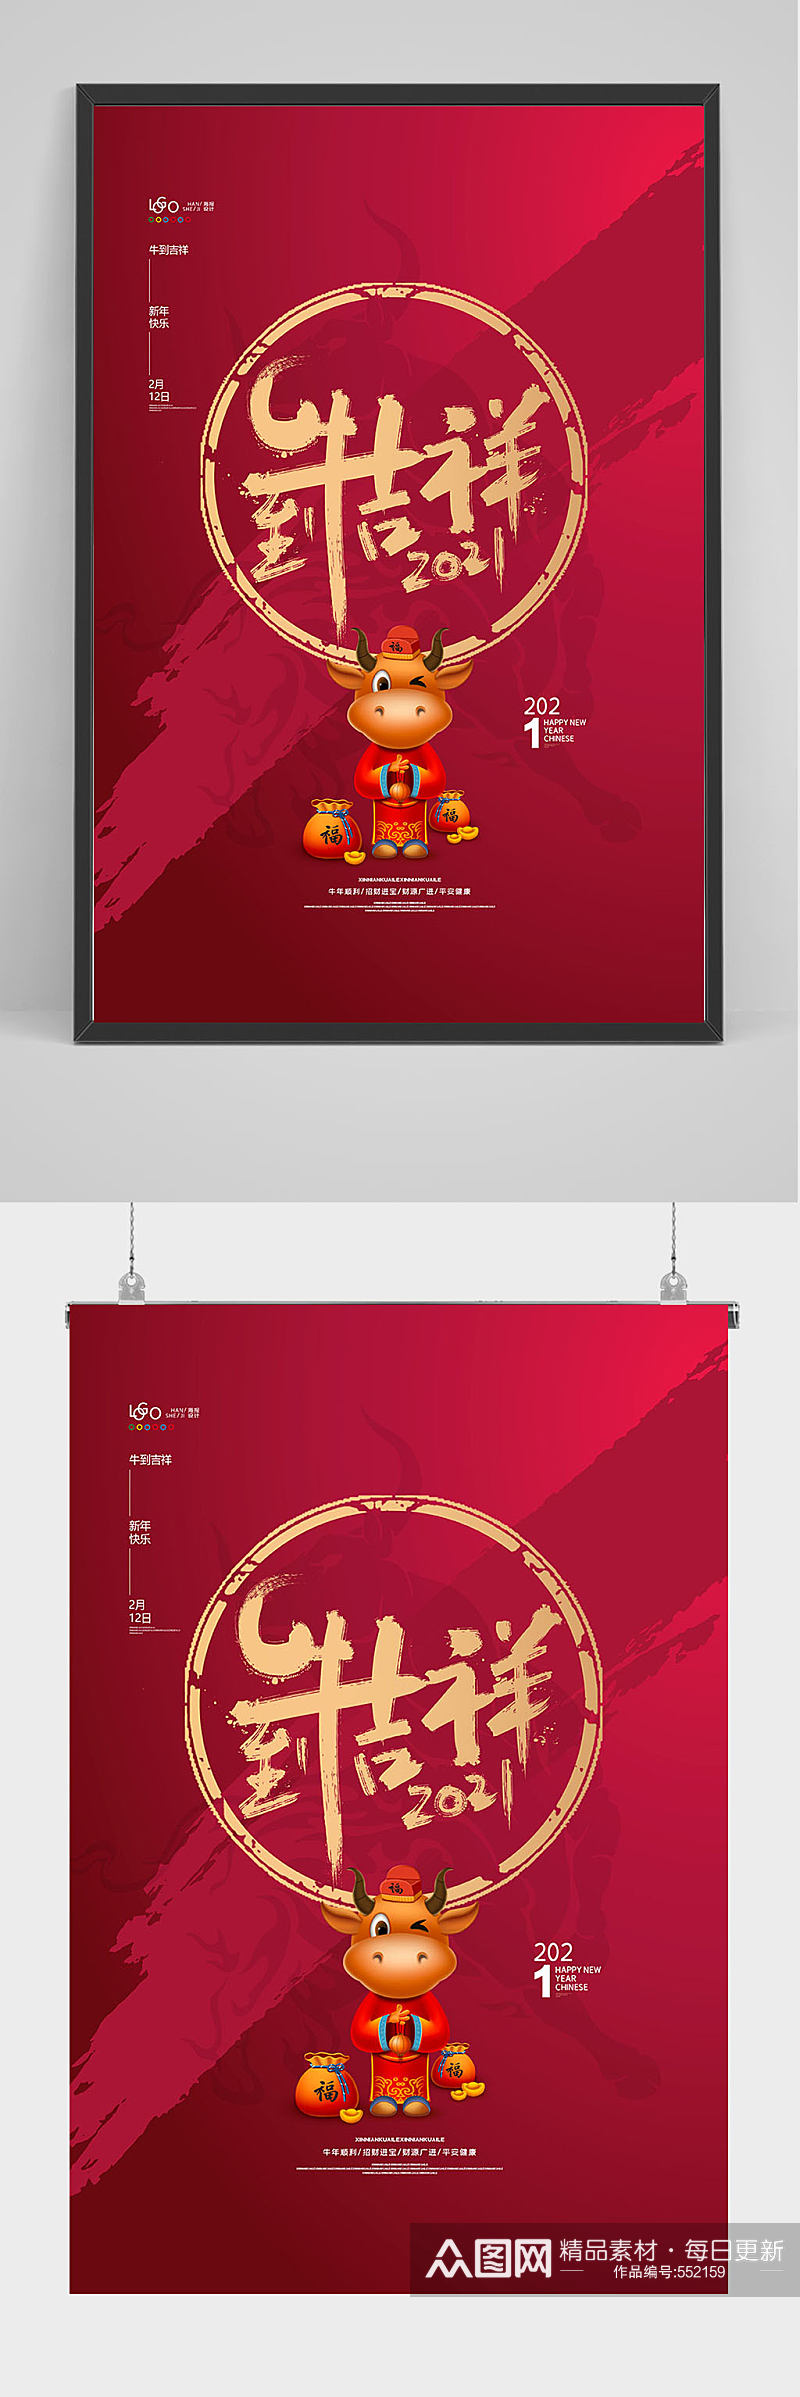 红色喜庆2021牛年吉祥海报设计素材